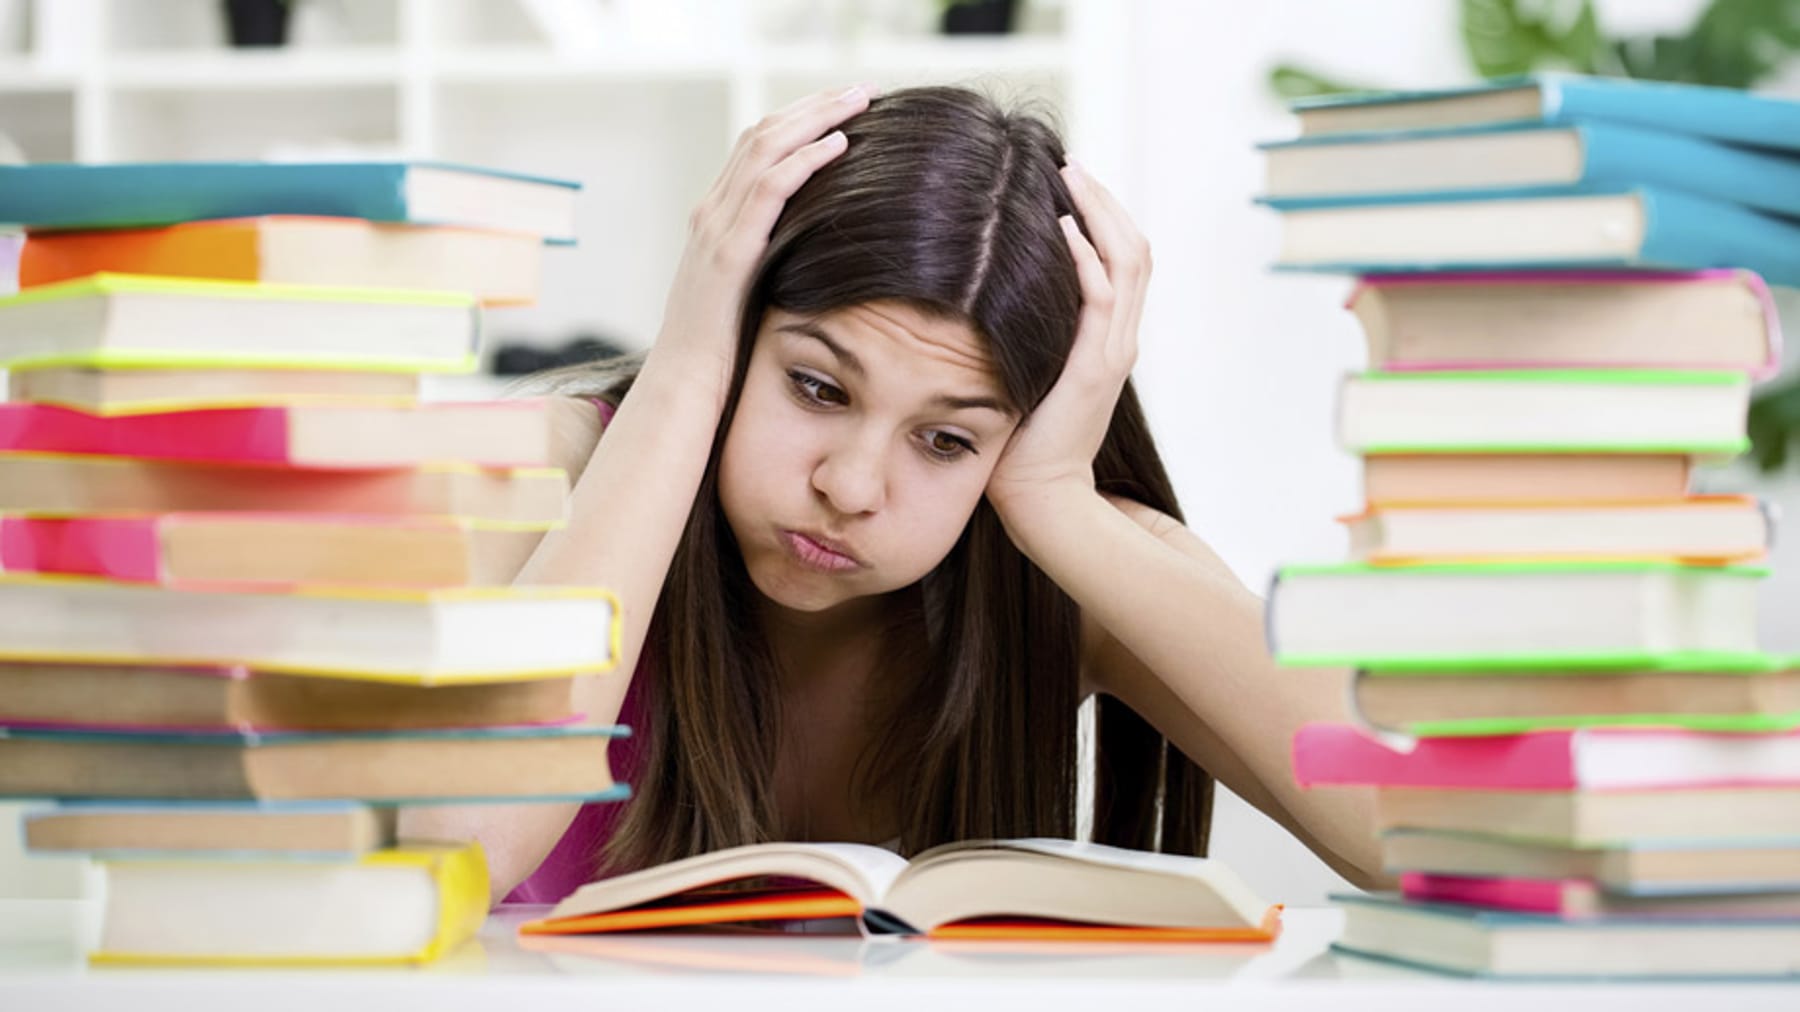 Книги много проблем. Девушка с учебниками. Студент над учебниками. Подросток с учебниками. Стресс от учебы.